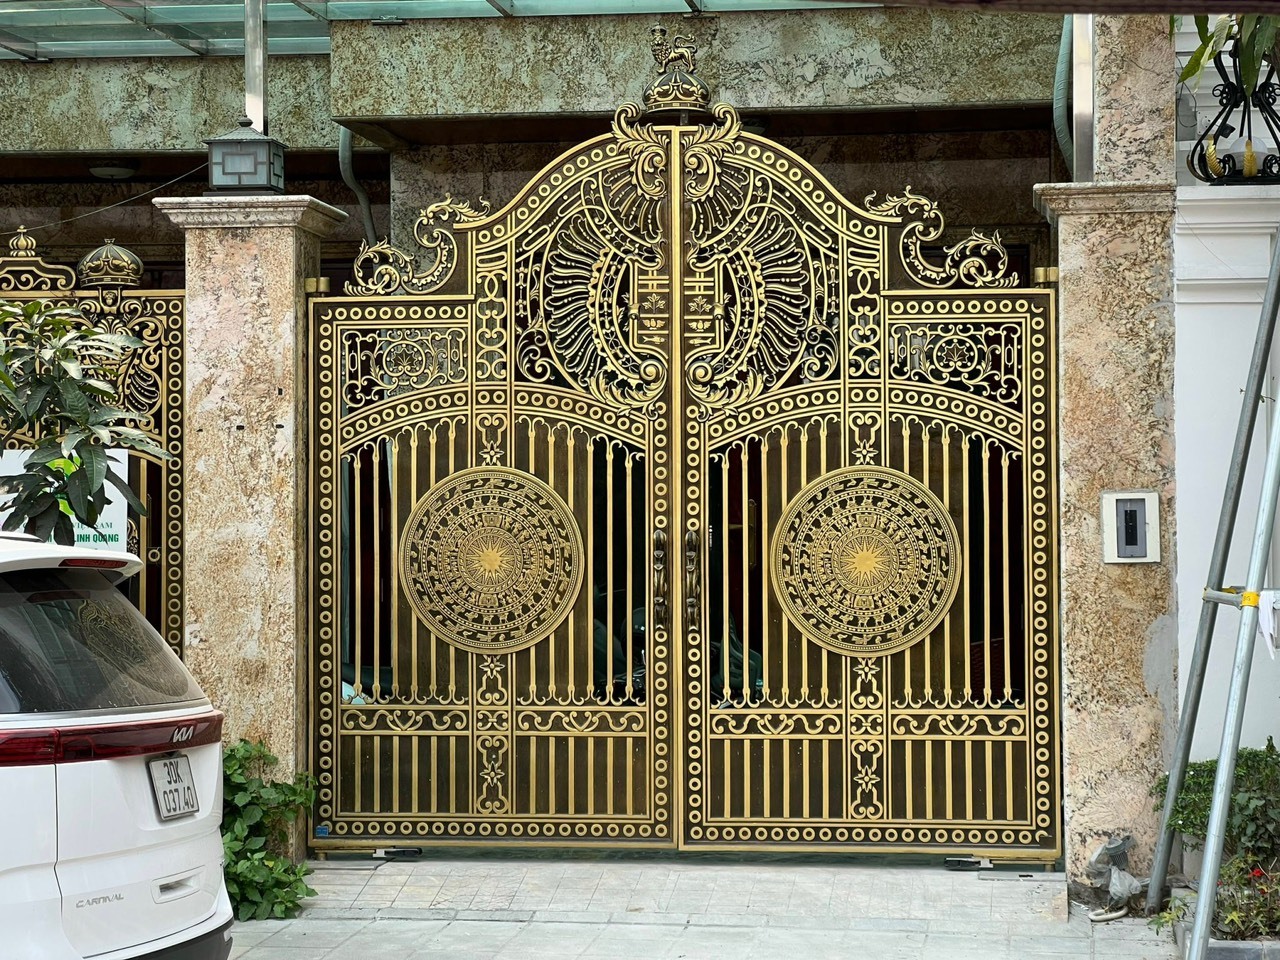 Biệt thự Linh Quang Điện kín cổng cao tường sau phản ánh của Lao Động. Ảnh: Nhóm PV